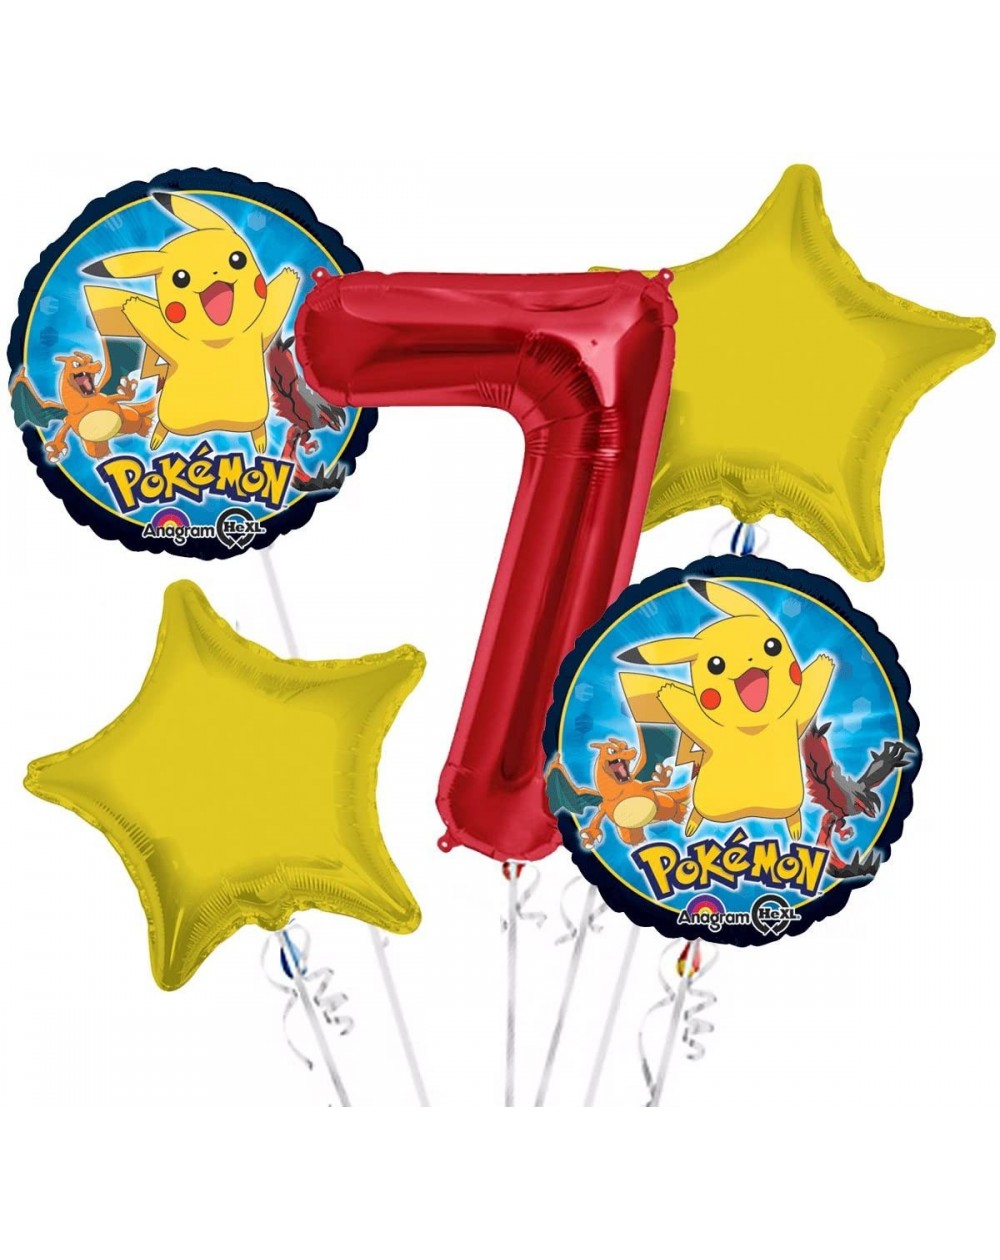 Balloons Pokemon Balloon Bouquet 7th Birthday 5 pcs - Party Supplies - C2182HOZ2WQ $15.61